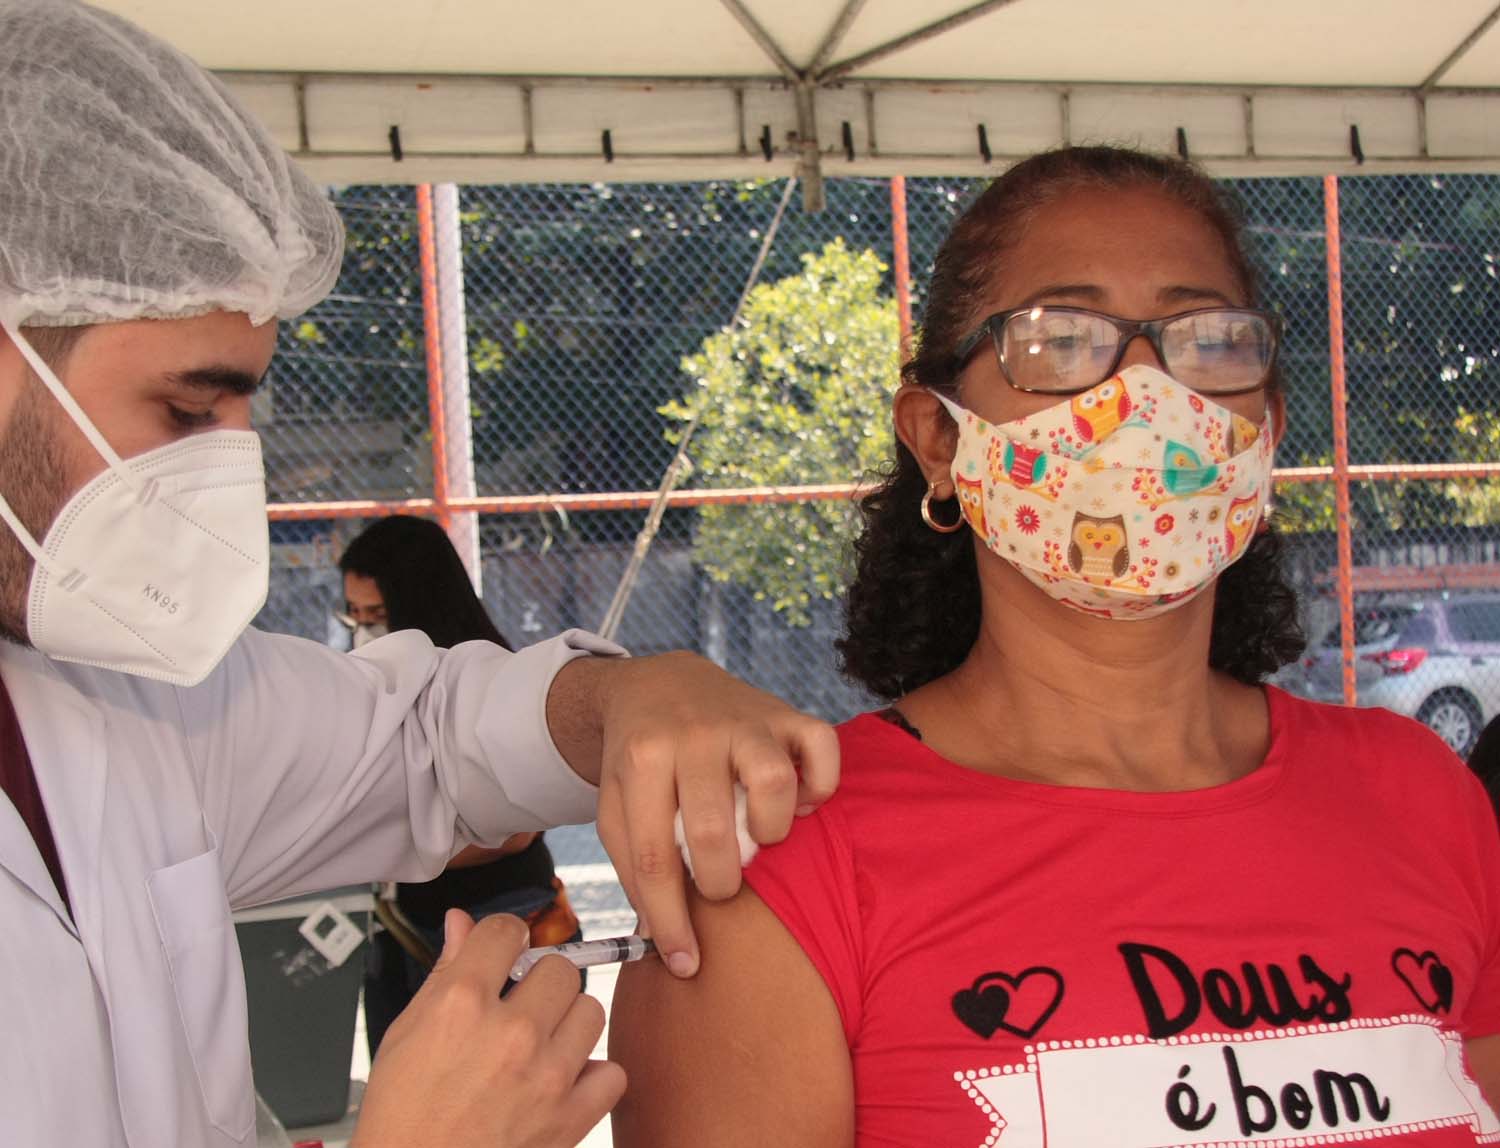 Nova Iguaçu vacina pessoas de 58 anos de idade  sem comorbidades desta quinta-feira até sábado